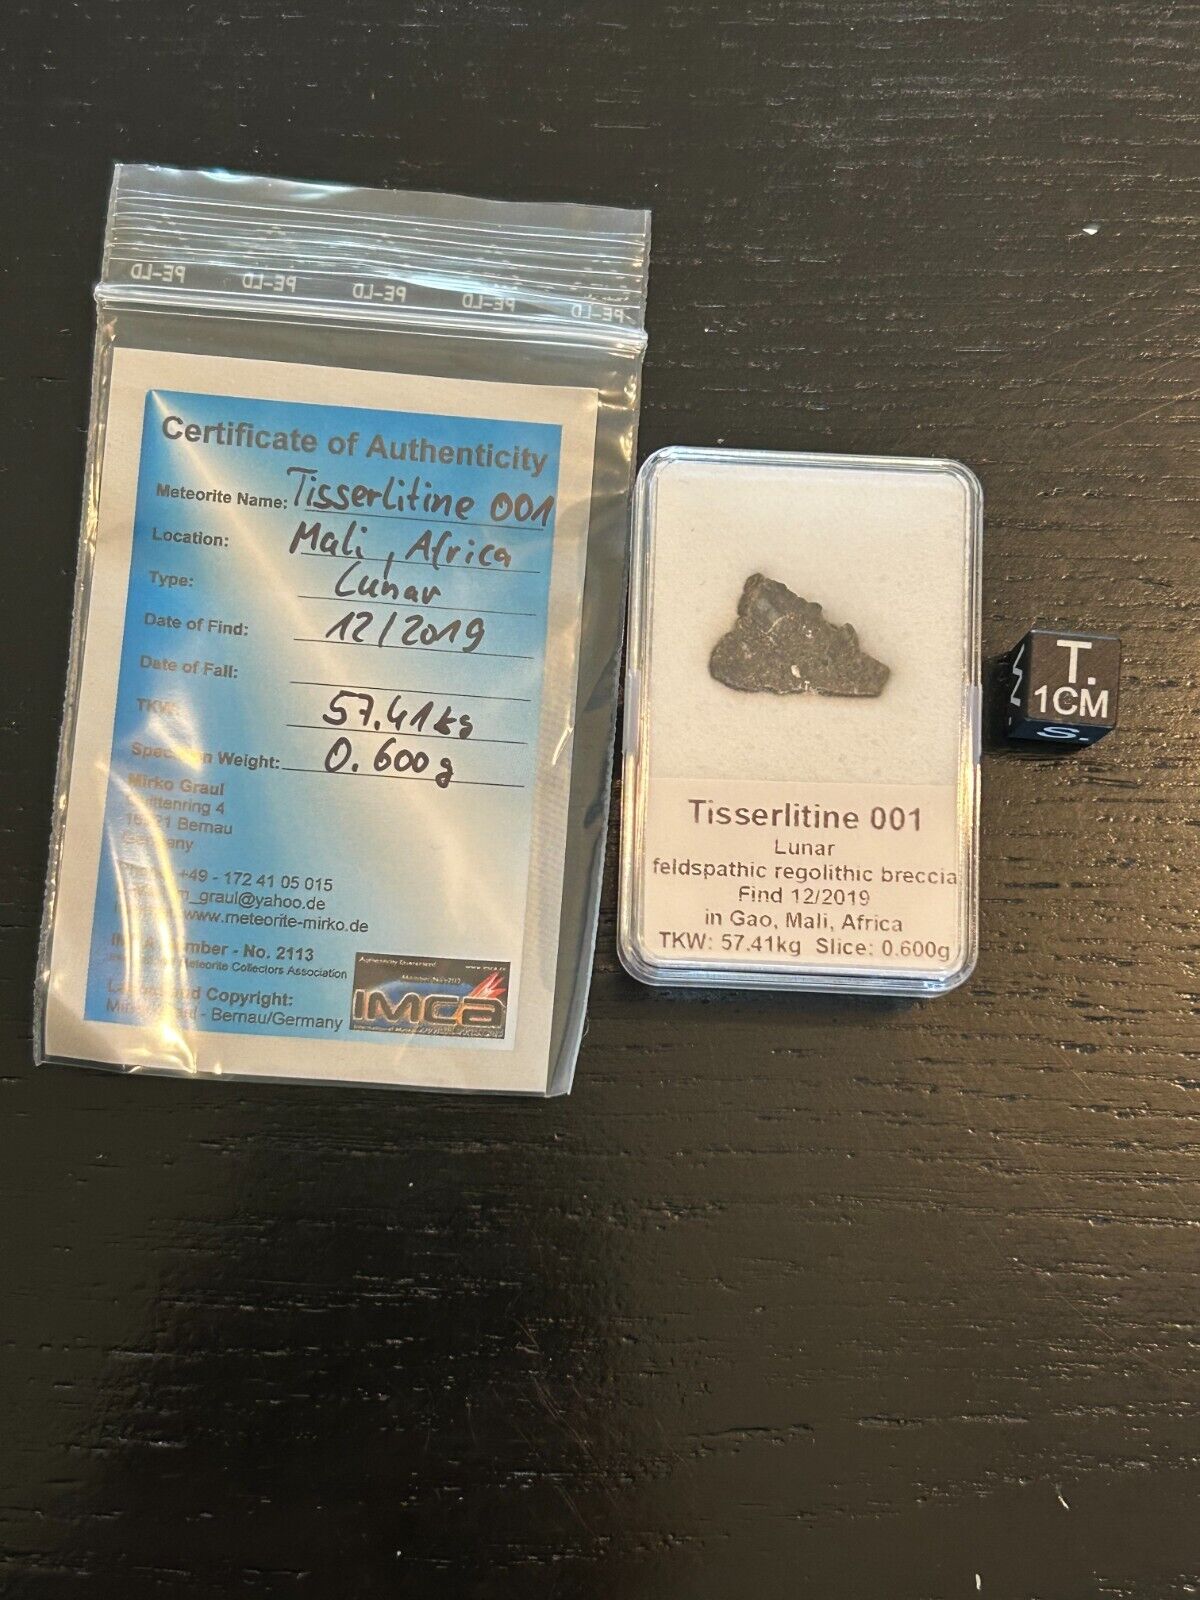 Slice 0.600gr Tisserlitine 001 - lunar meteorite - 2019 at Gao, Mali ( Africa ).